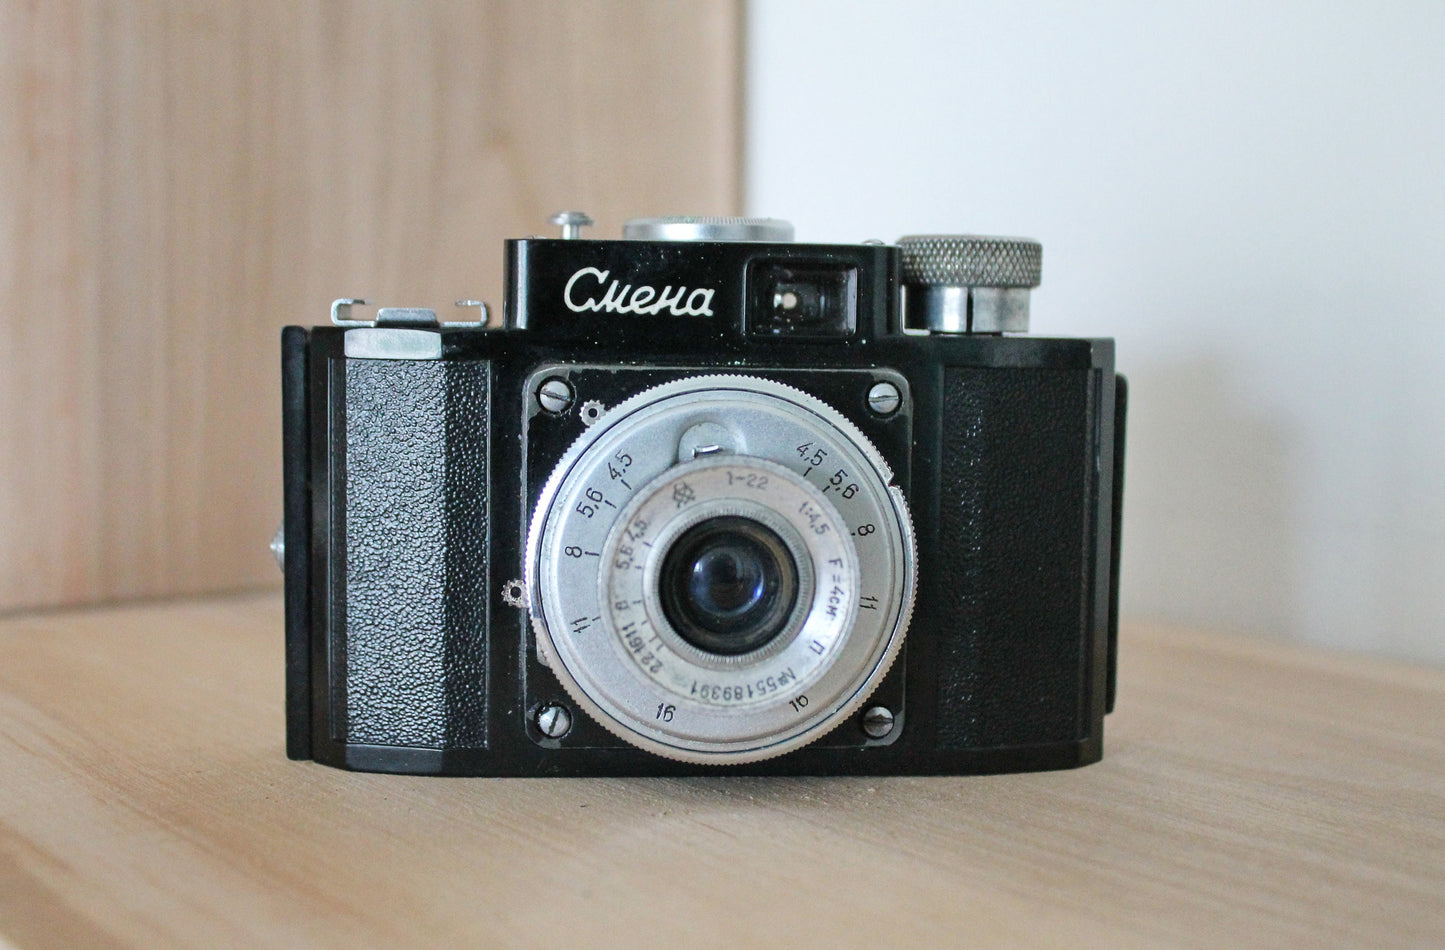 Vintage Film-camera Smena Lomo - USSR vintage camera - Vintage PHOTOGRAPHY - original leather case